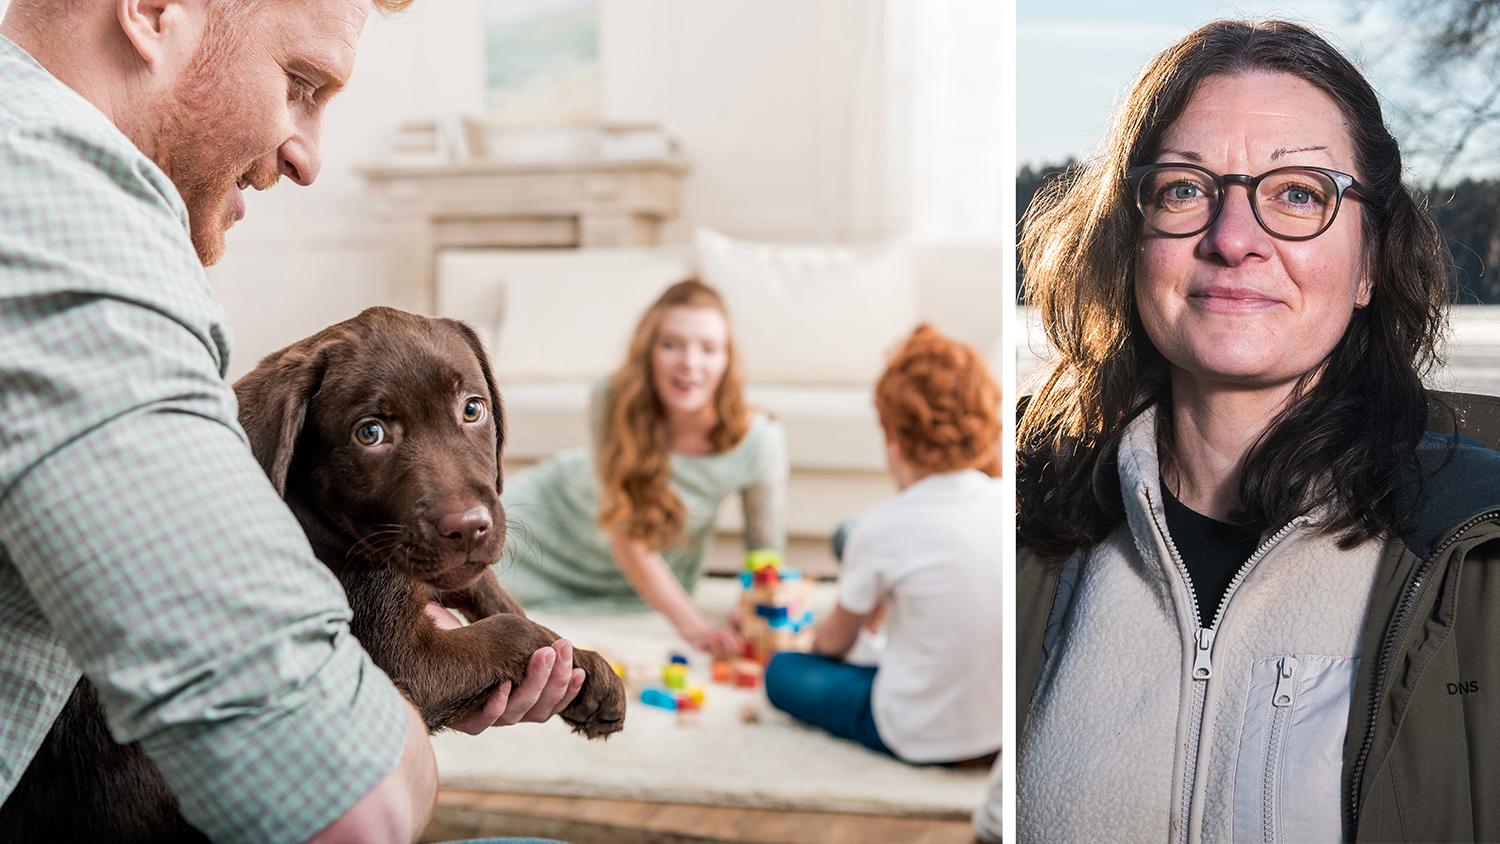 Får hunden vara i soffan? Det är en av många frågor där det är bra om familjen är överens. ”Ha ett familjeråd. Diskutera vilka regler som ska gälla, så ni har en gemensam linje”, tipsar hundpsykologen Linda Atmer.